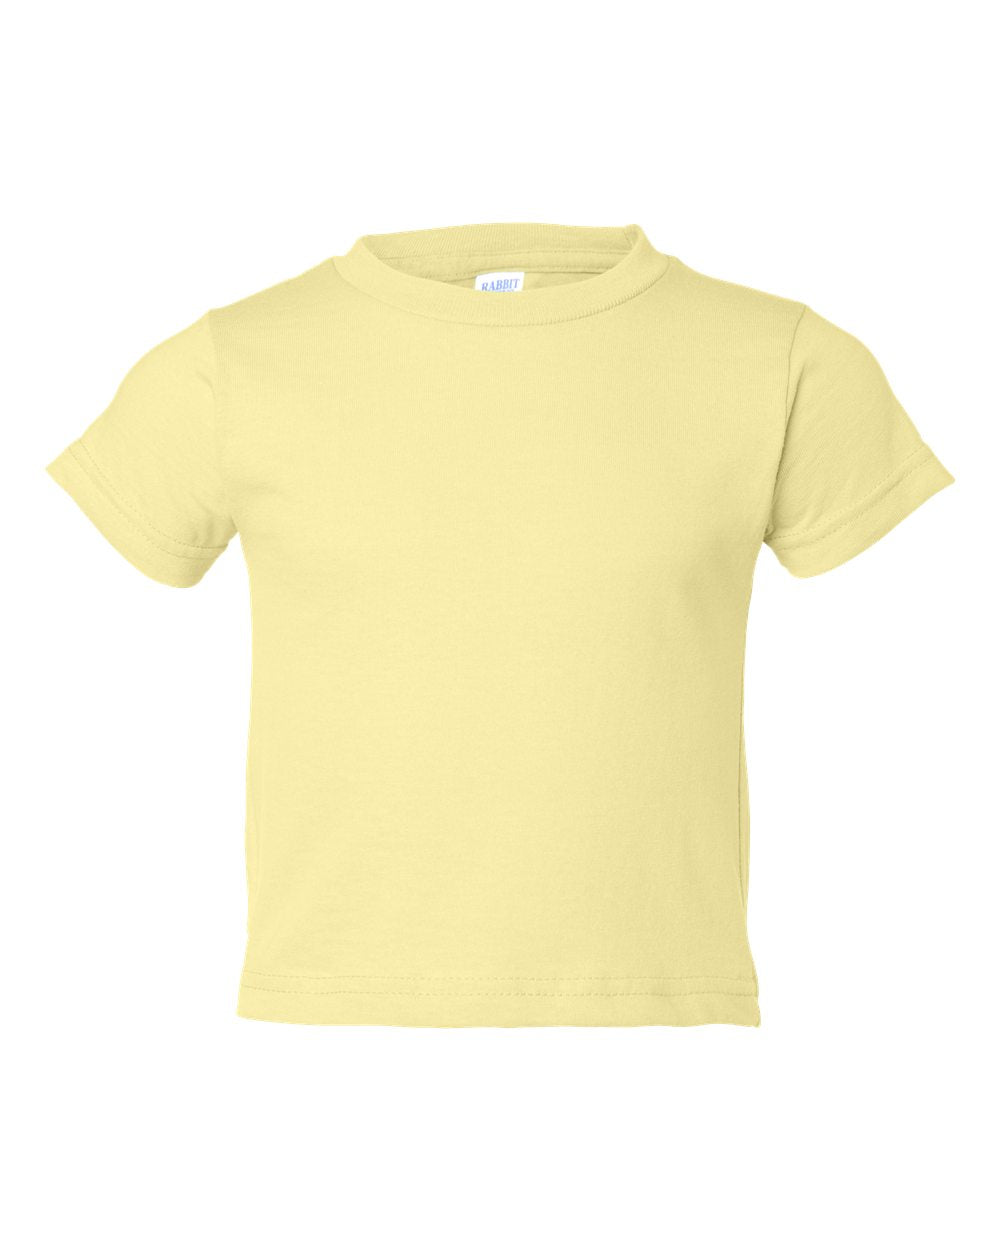 Toddler Jersey T-shirt, 100% Cotton, Light Yellow